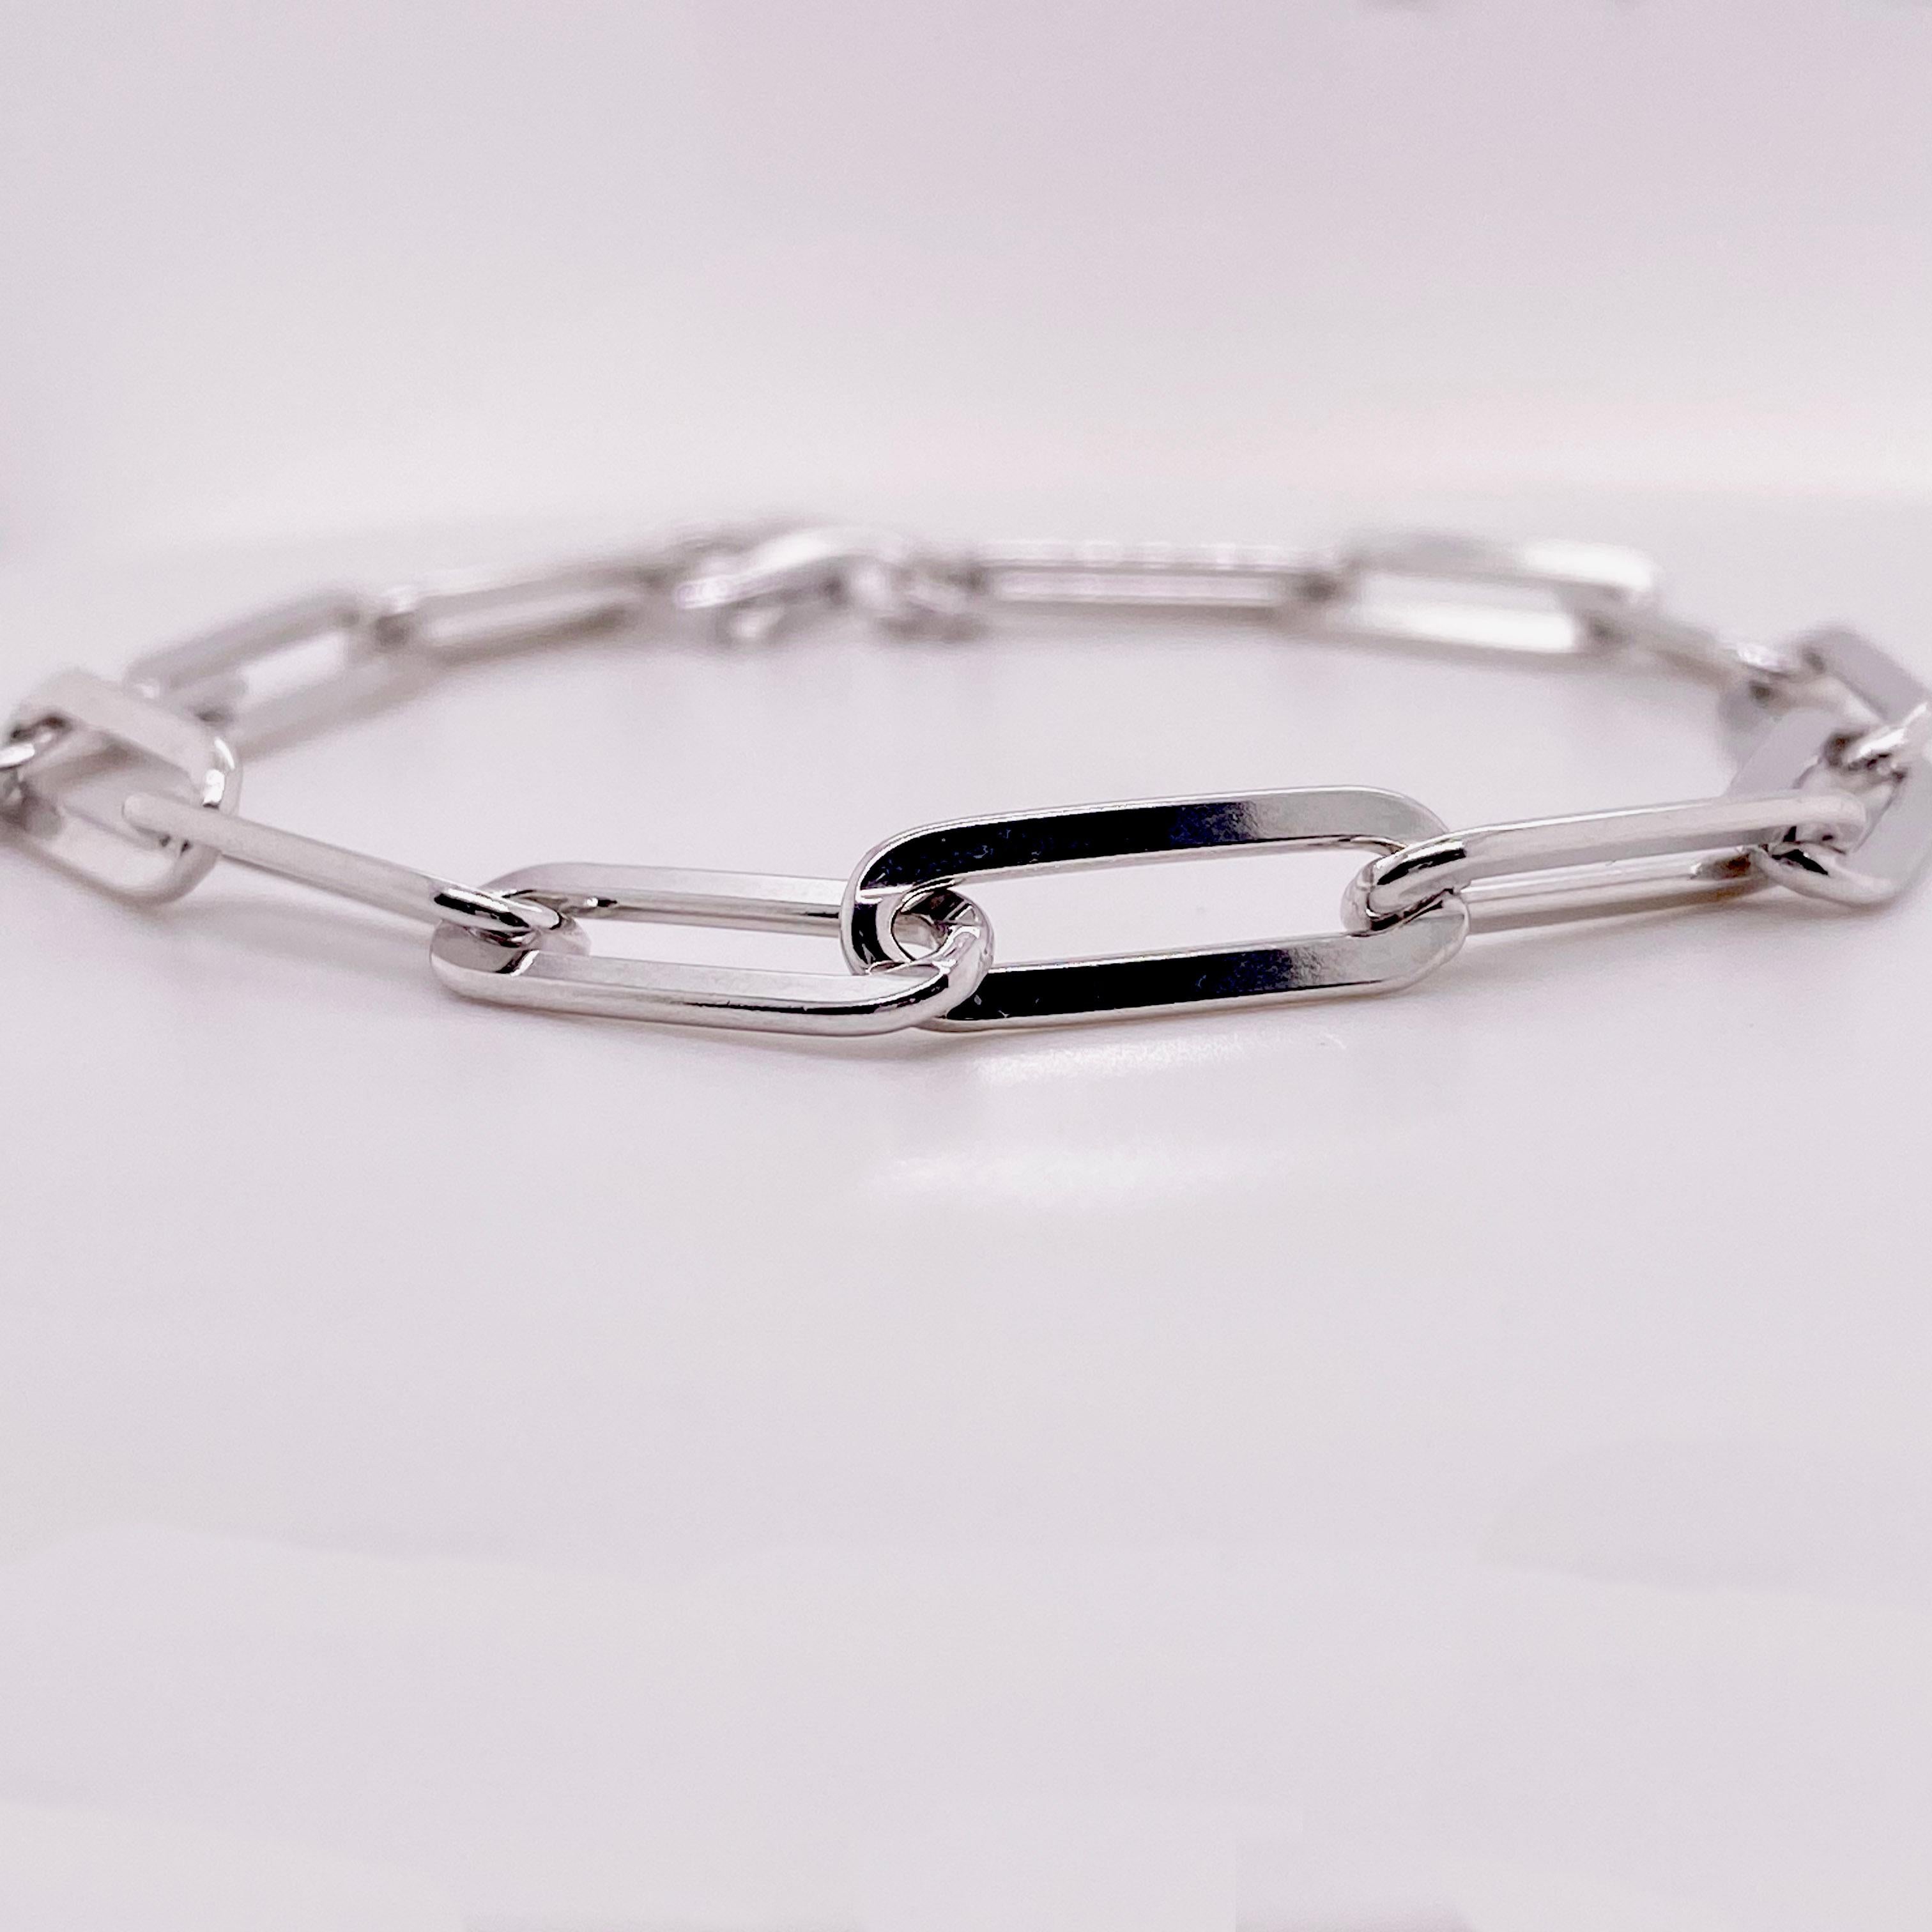 Vous trouverez ci-dessous les détails de ce magnifique bracelet :
Type de bracelet : Trombone 
Qualité du métal : Argent Sterling
Longueur : 7,5 in 
Largeur : 5,8 mm
Fermoir : fermoir à mousqueton 
Poids total : 9,7 g 
